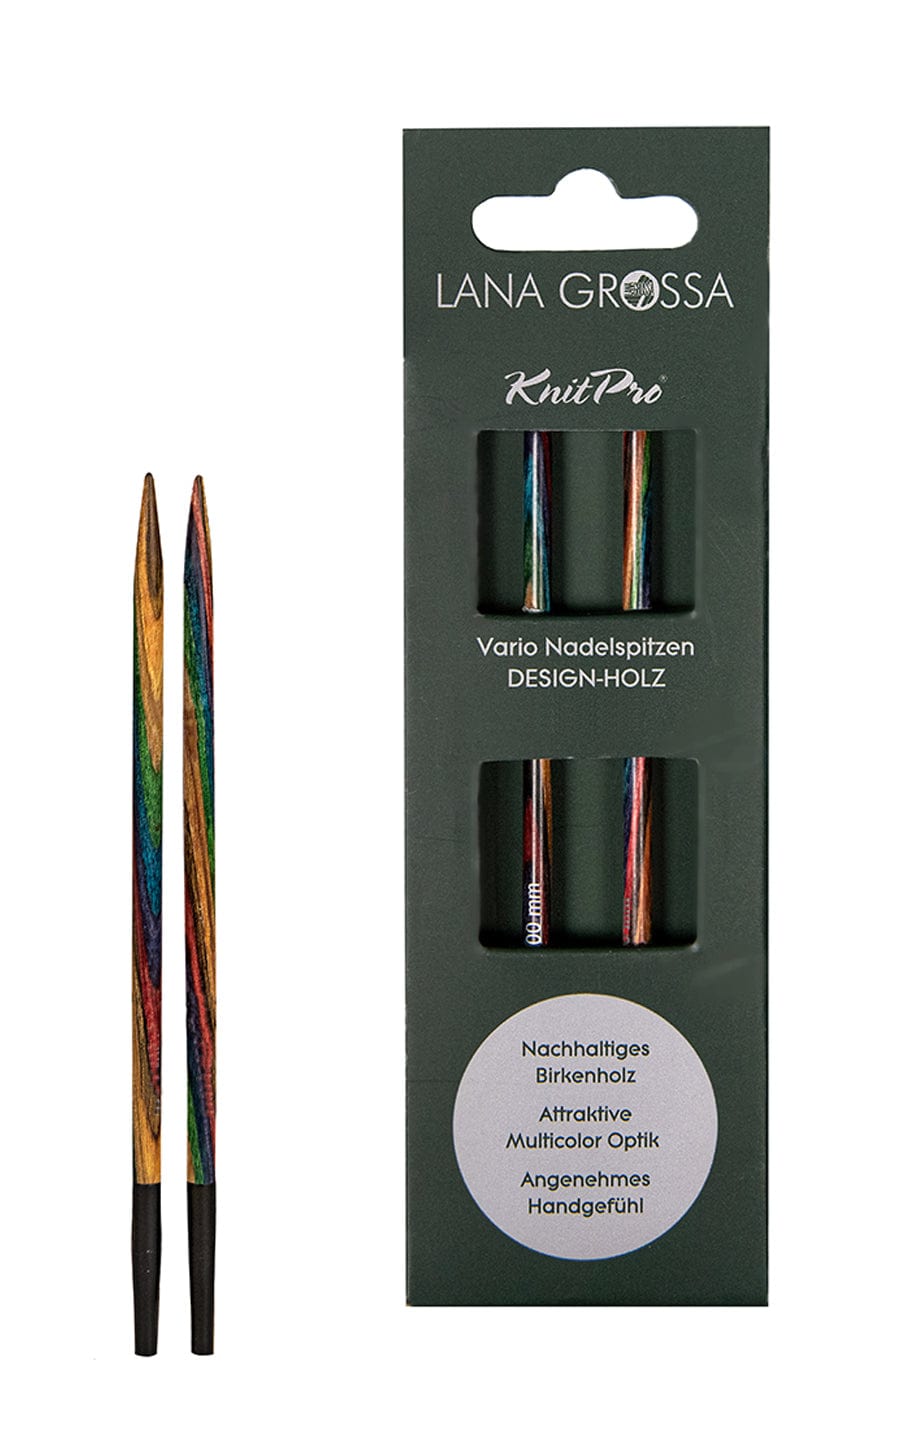 LANA GROSSA Nadeln Kurze 5,5 mm Nadelspitze Vario aus Holz - neue Verpackung